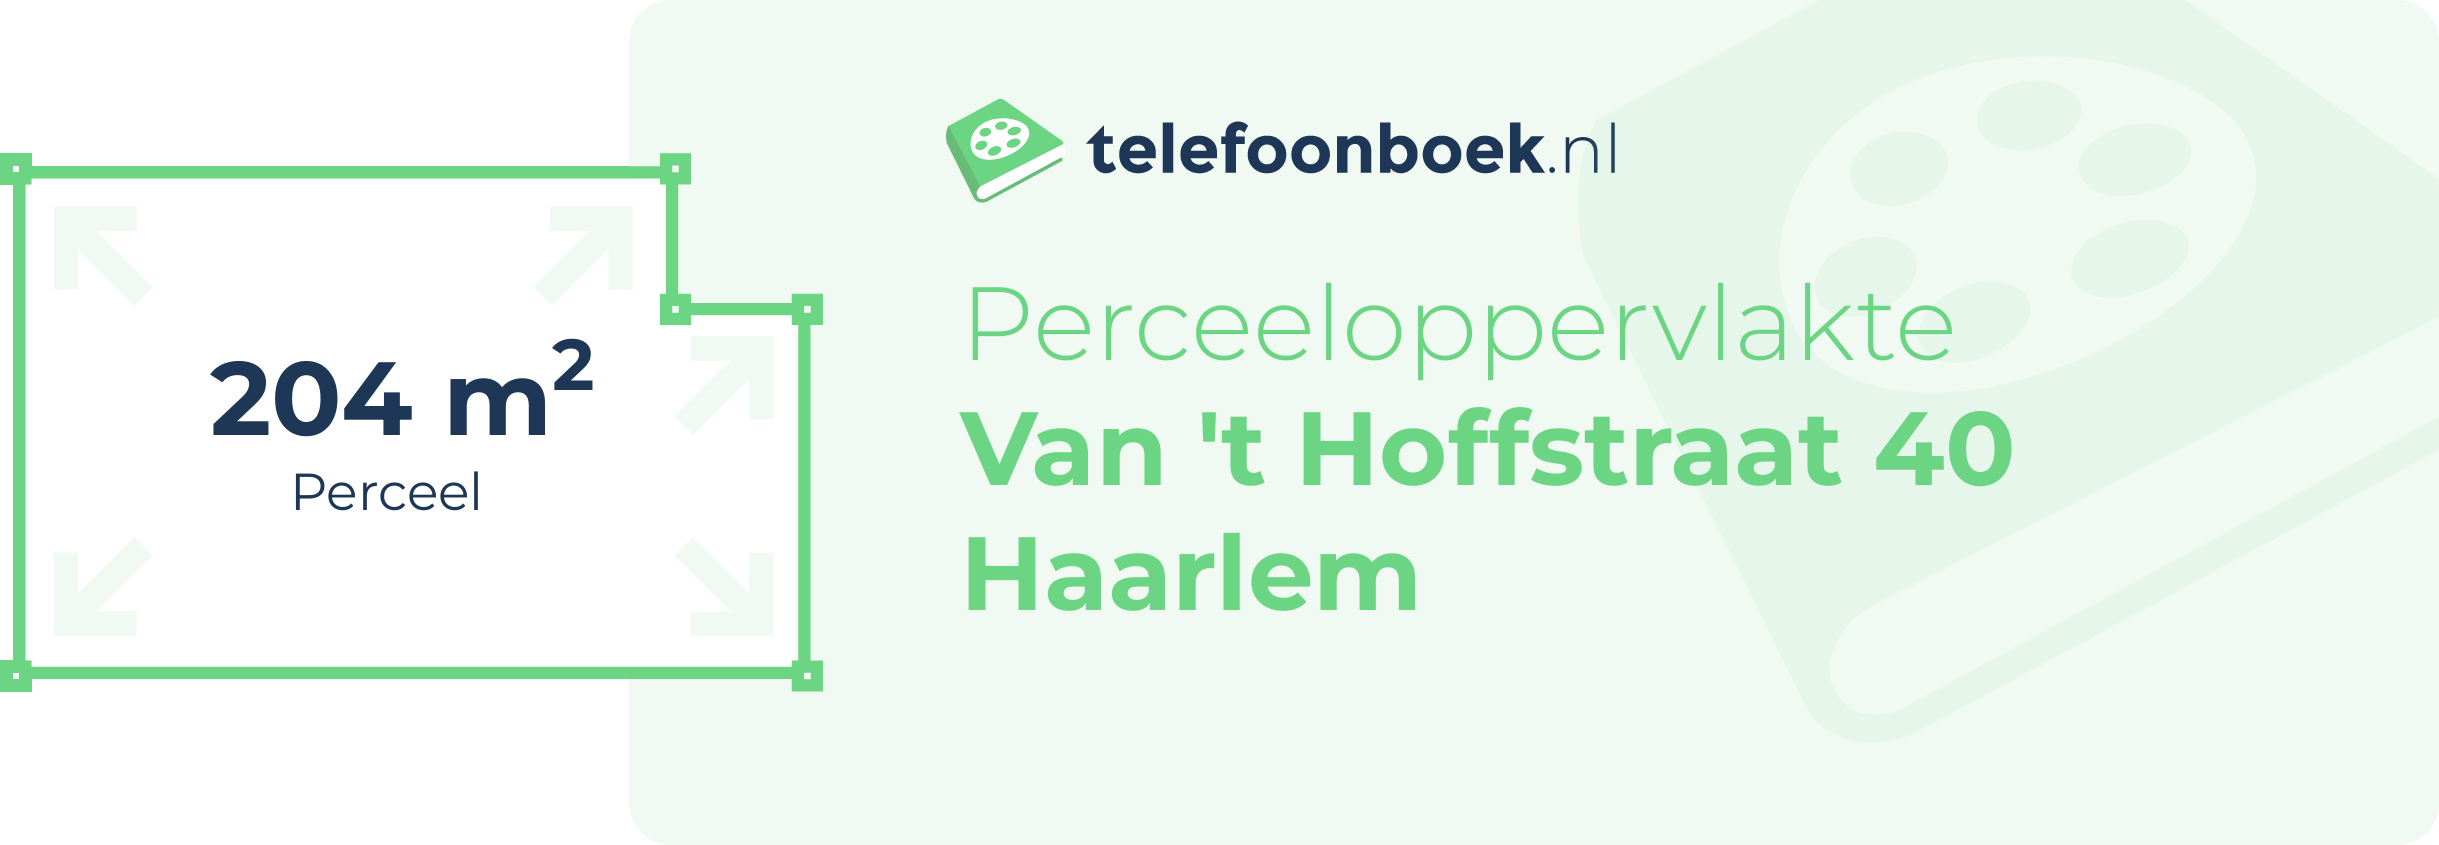 Perceeloppervlakte Van 't Hoffstraat 40 Haarlem